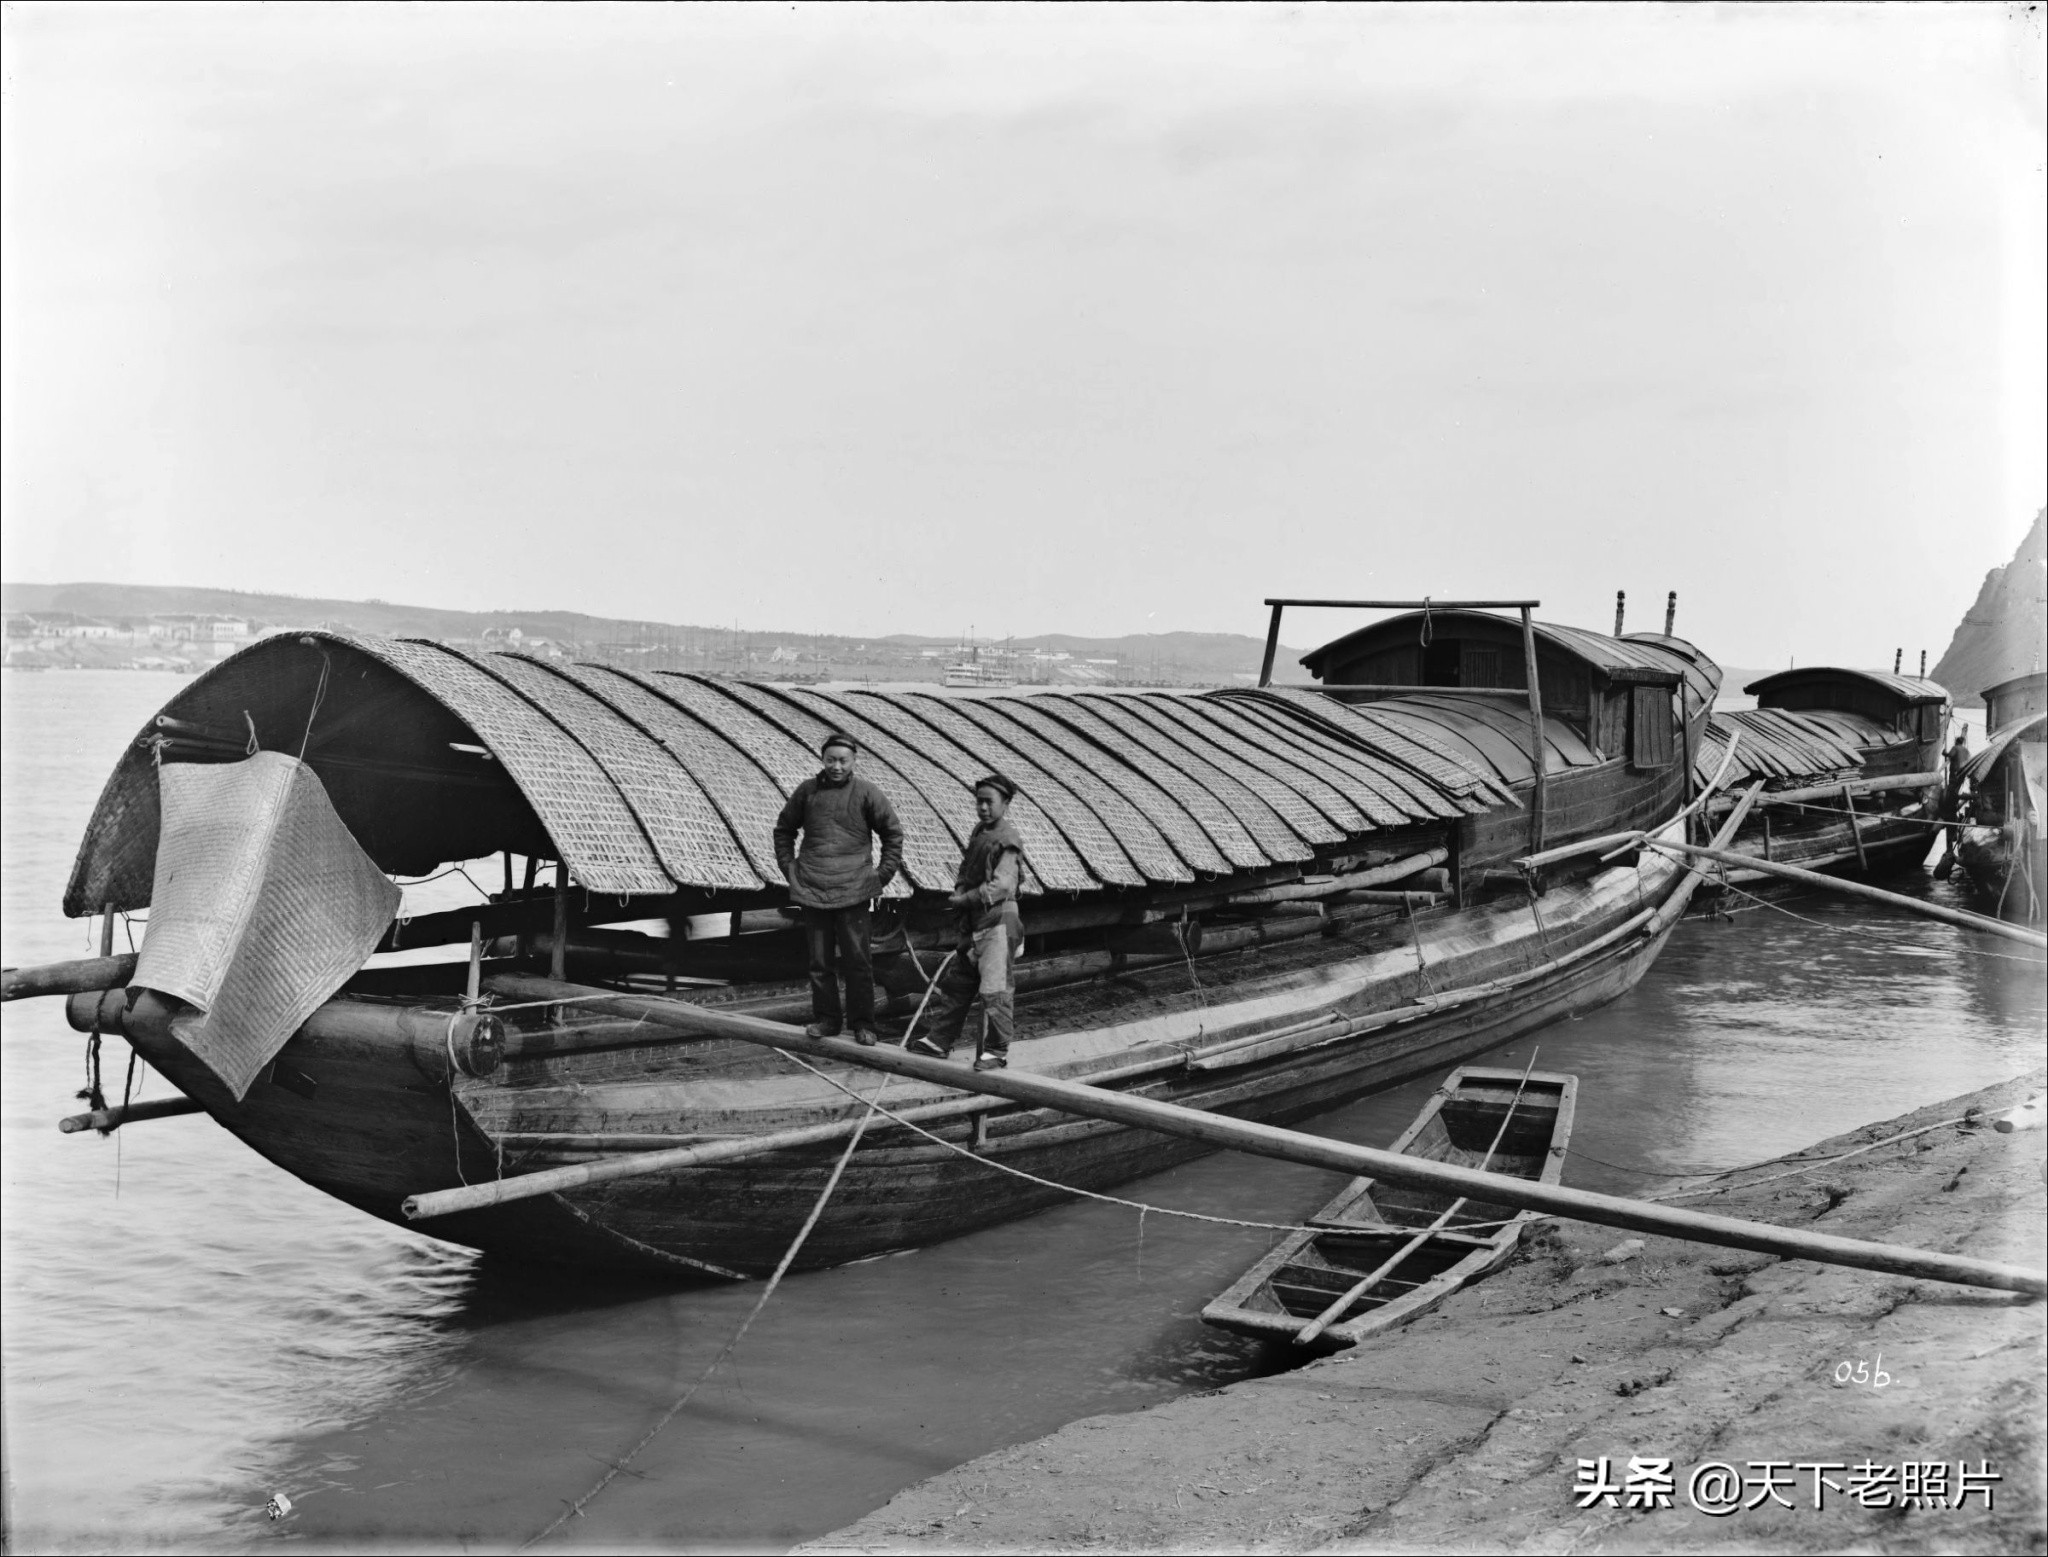 30副照片带你尽览1911年的湖北宜昌人物风貌及乡村生活